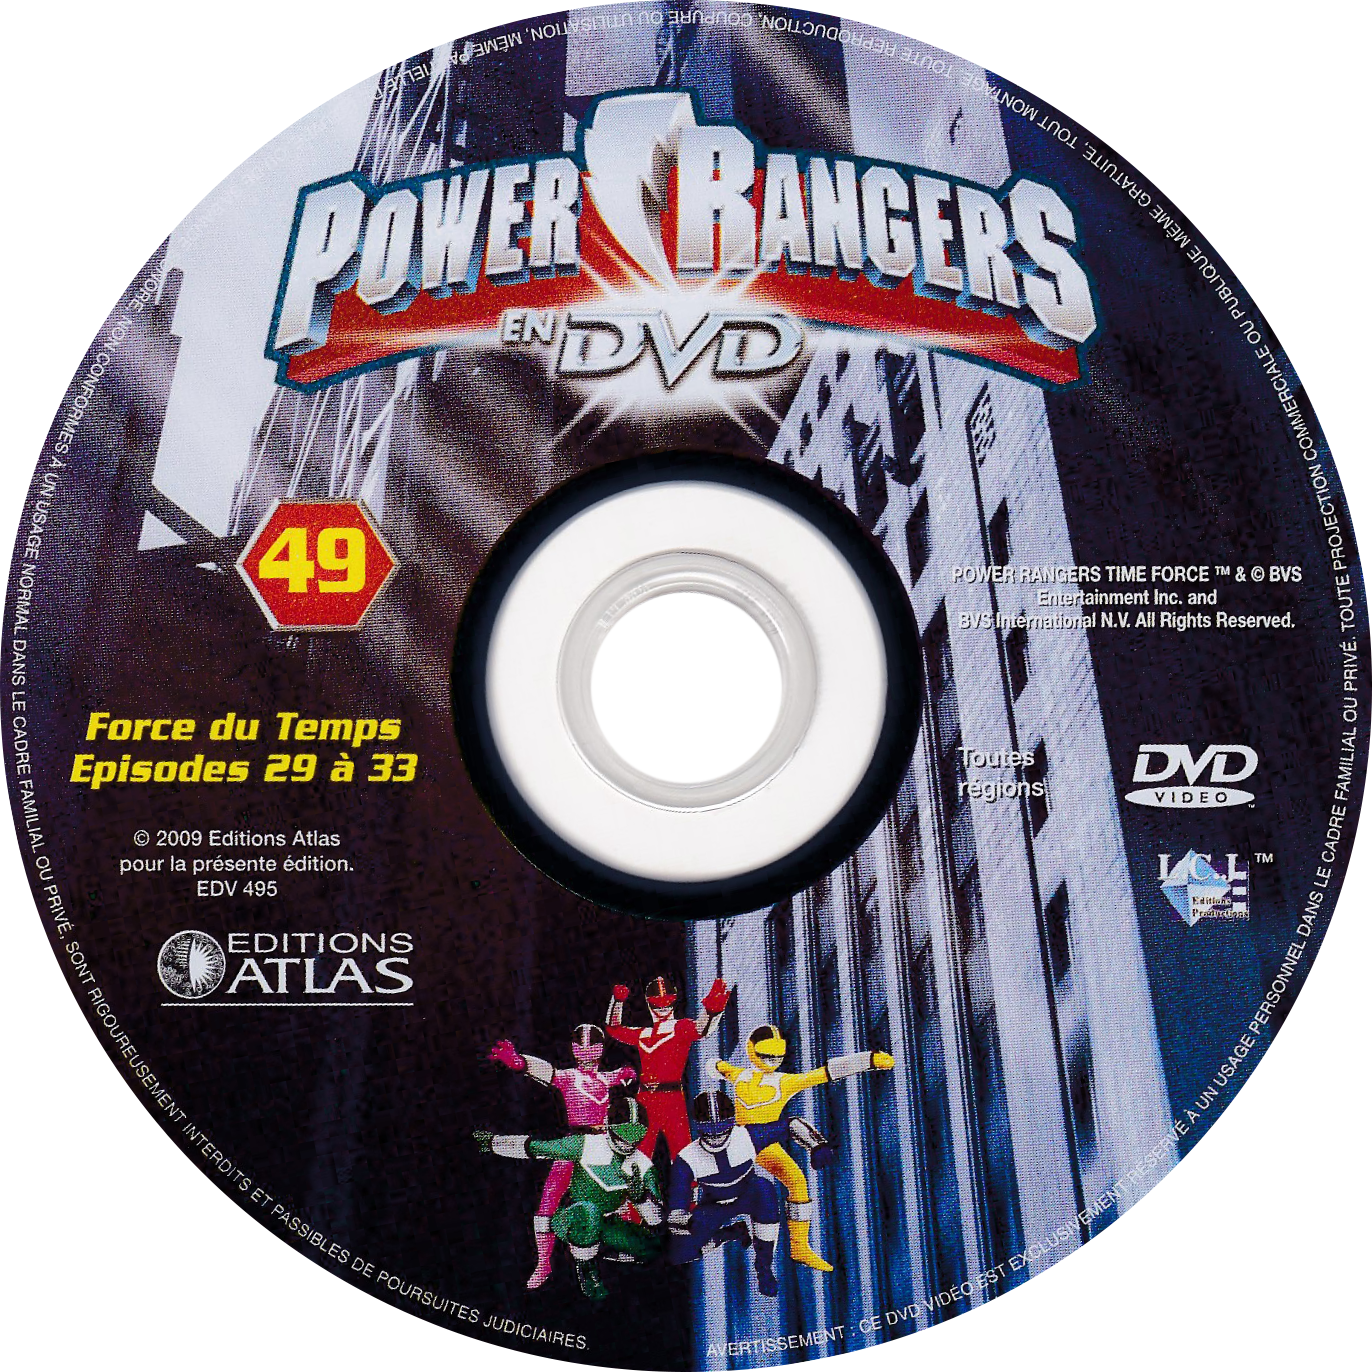 Power Rangers en DVD n°49